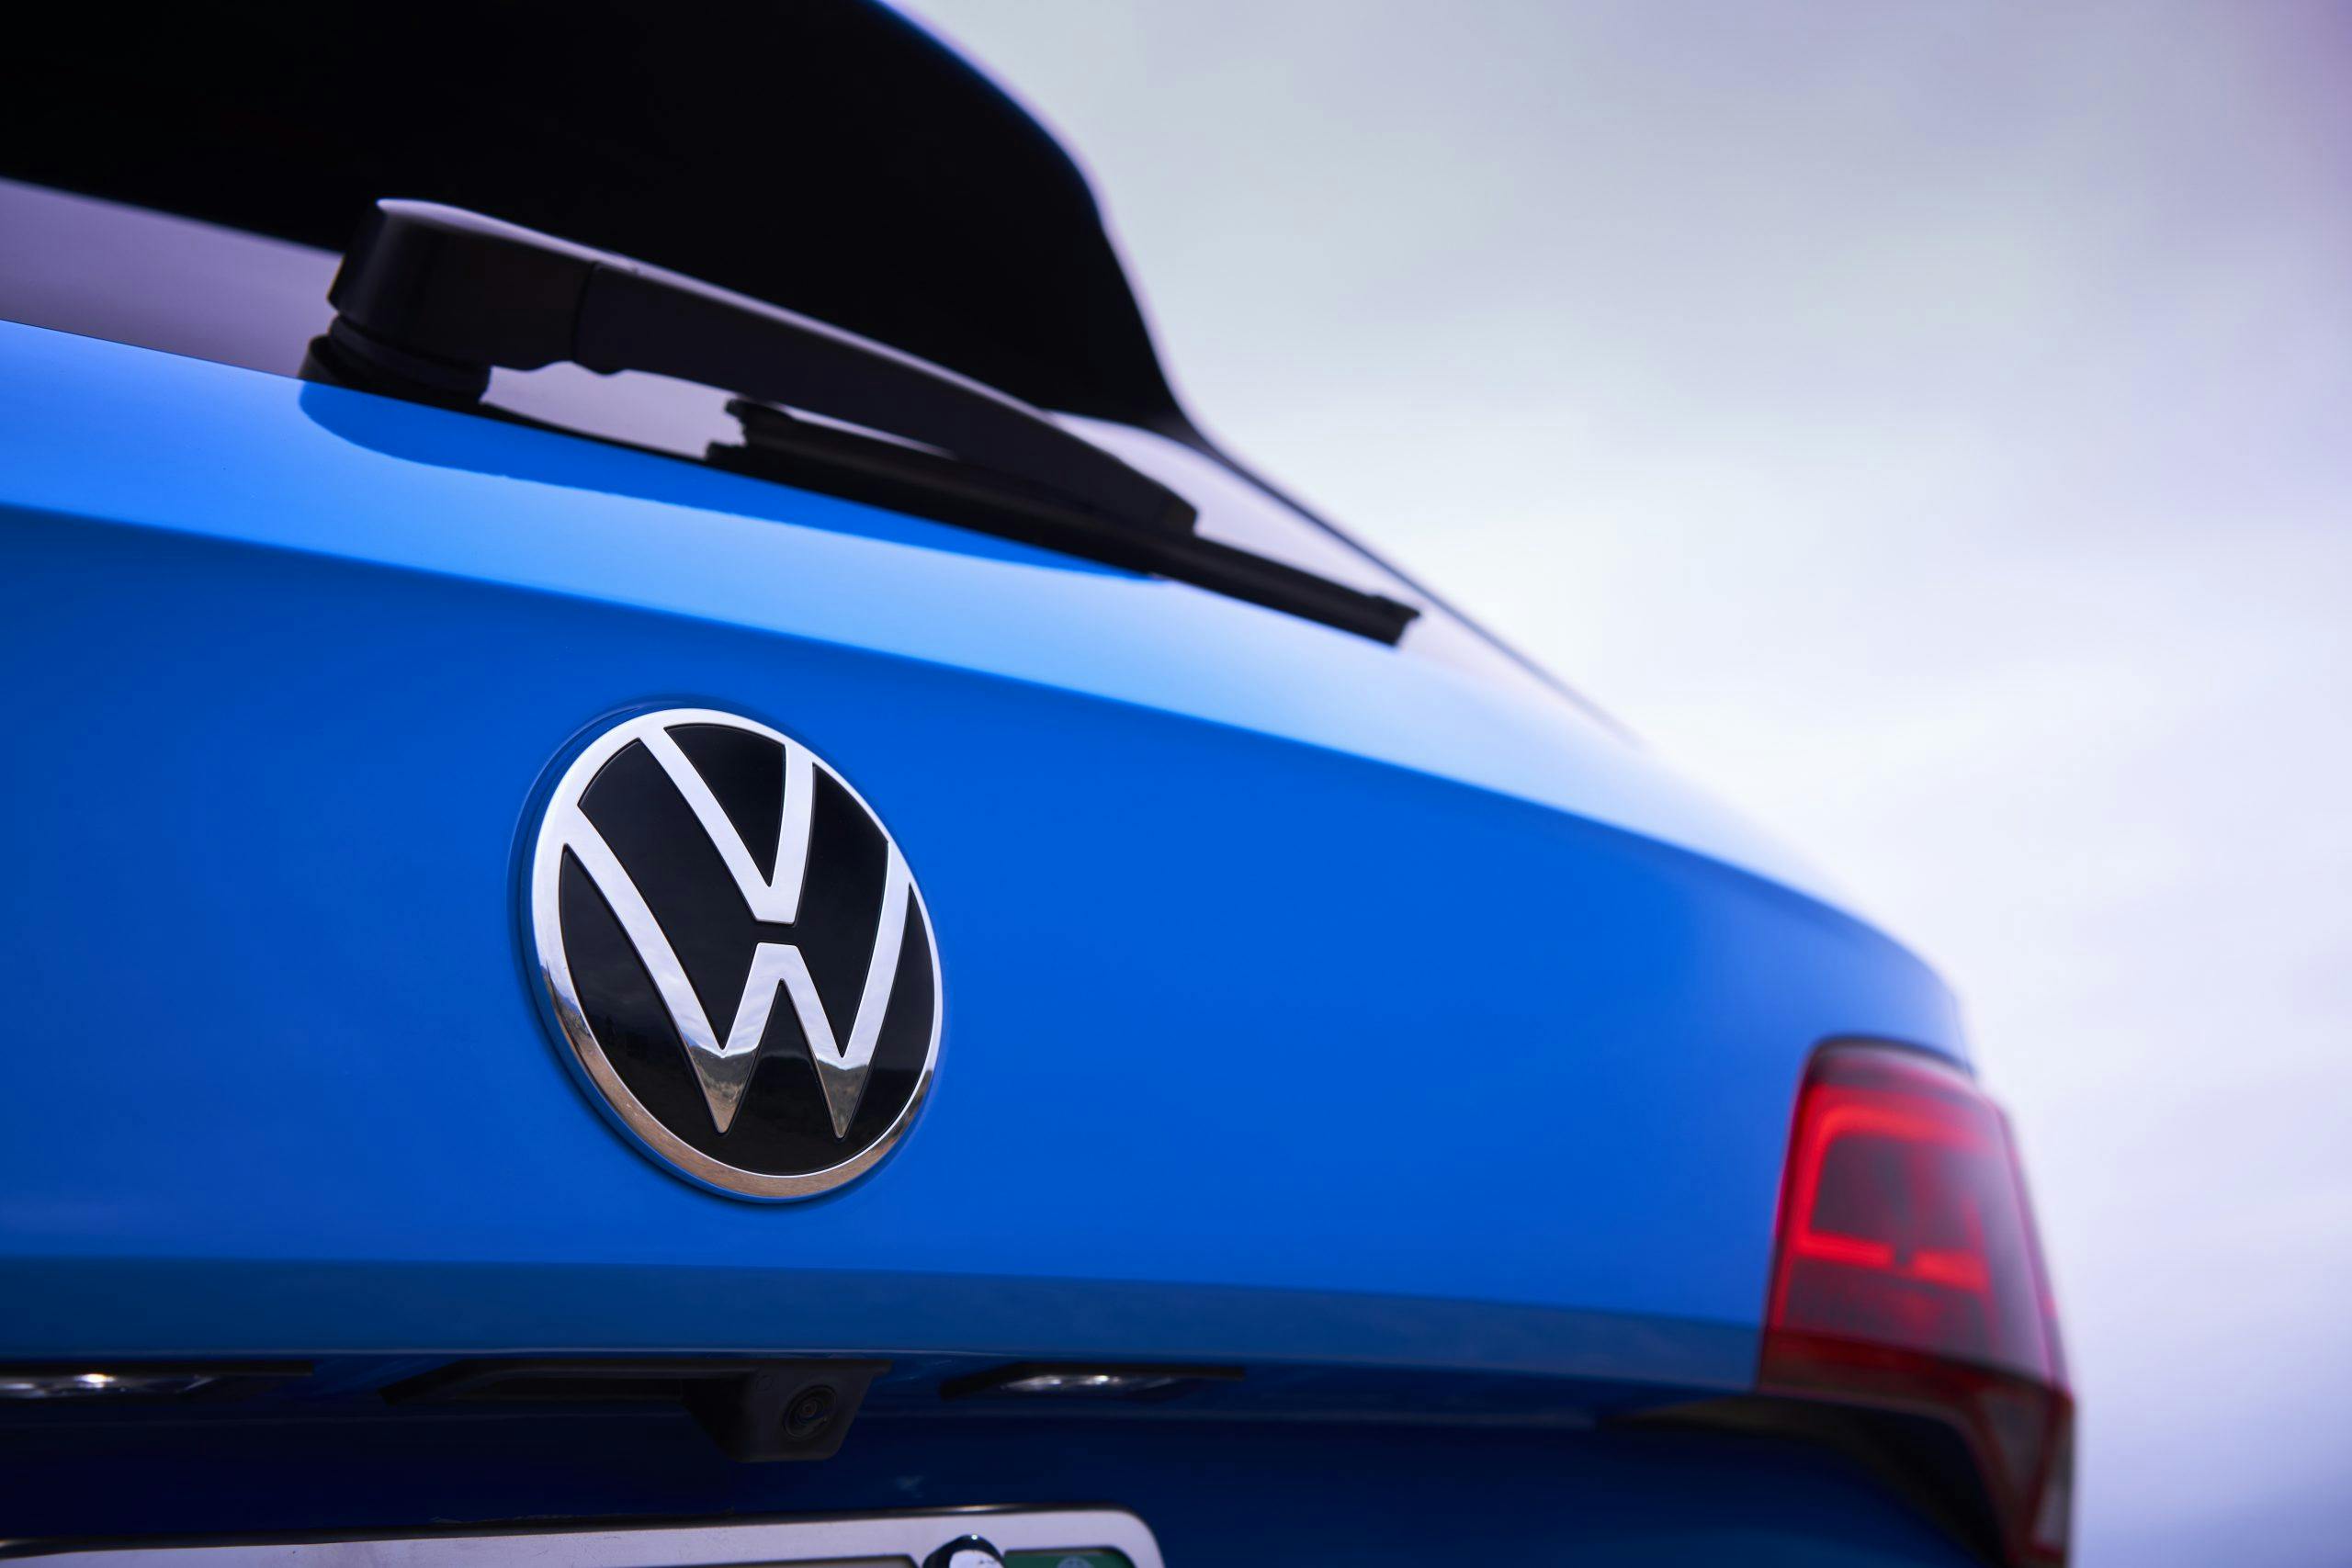 2022 Volkswagen Taos rear logo